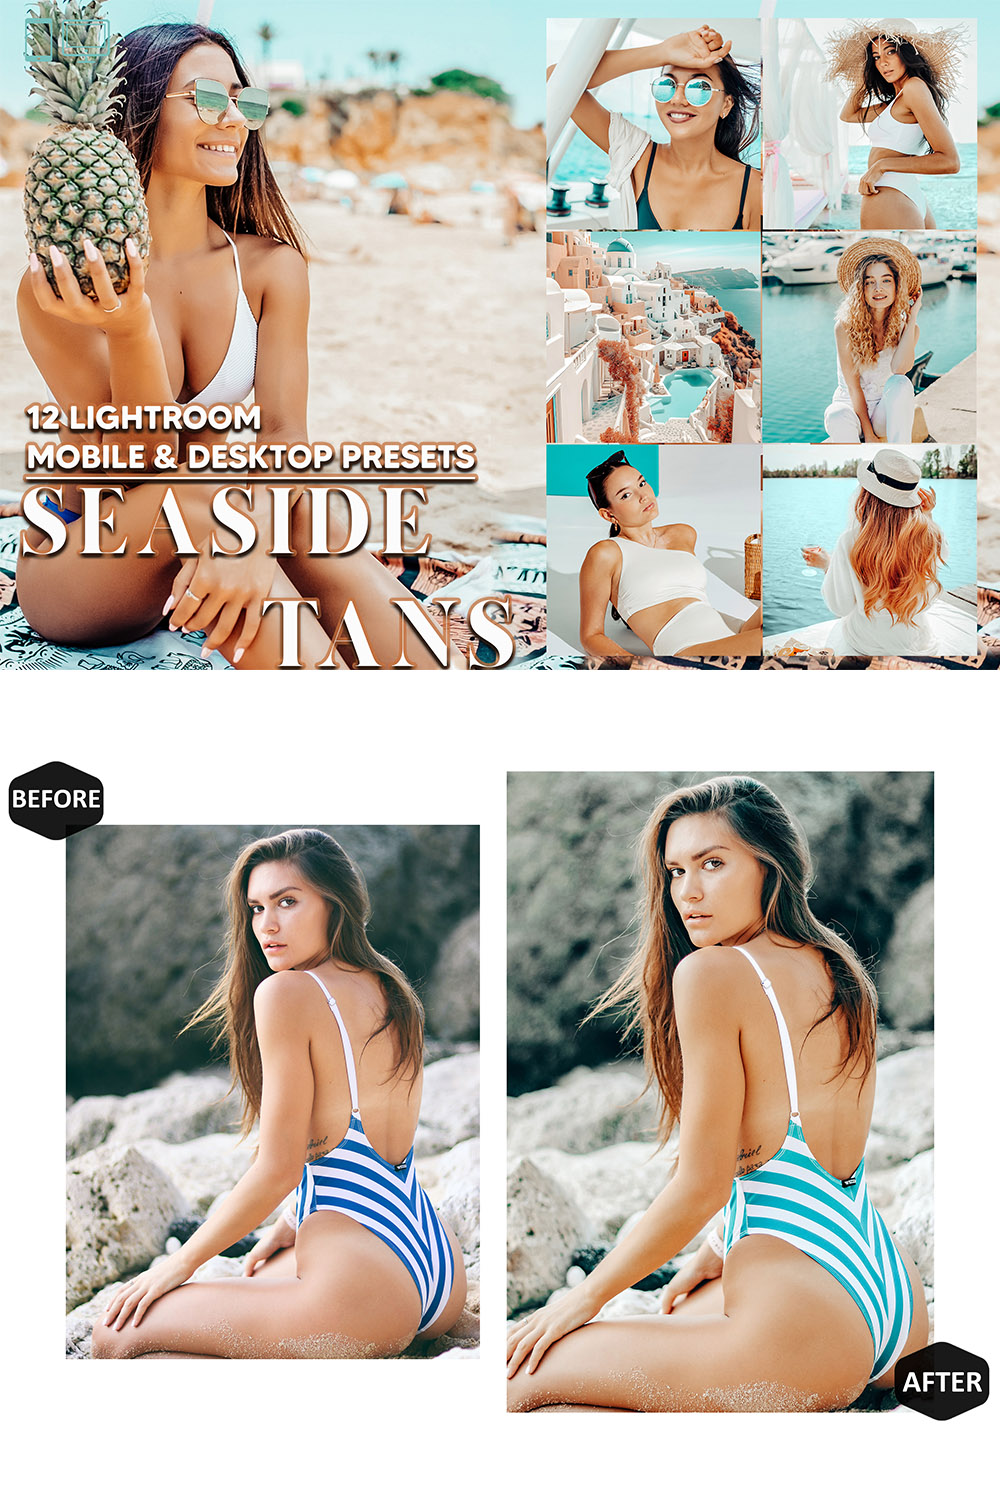 12 Seaside Tans Lightroom Presets, Bright Summer Mobile Preset, Sunkissed Desktop LR Filter Lifestyle Theme For Blogger Portrait Instagram pinterest preview image.